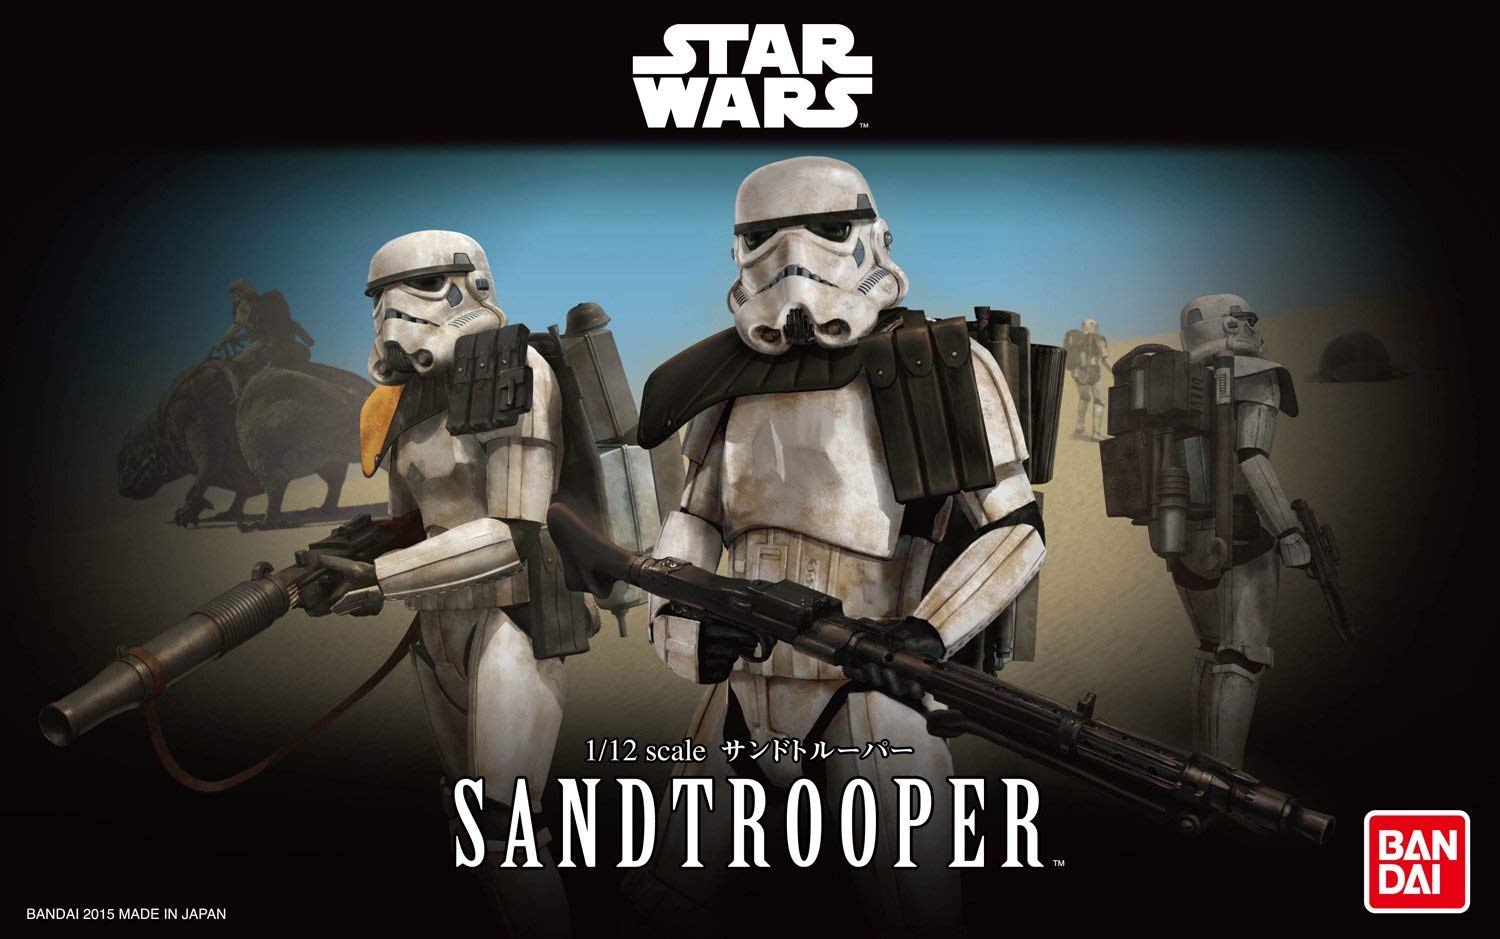 Star Wars 1/12 Scale Sandtrooper Star Wars Episode IV Model Kit